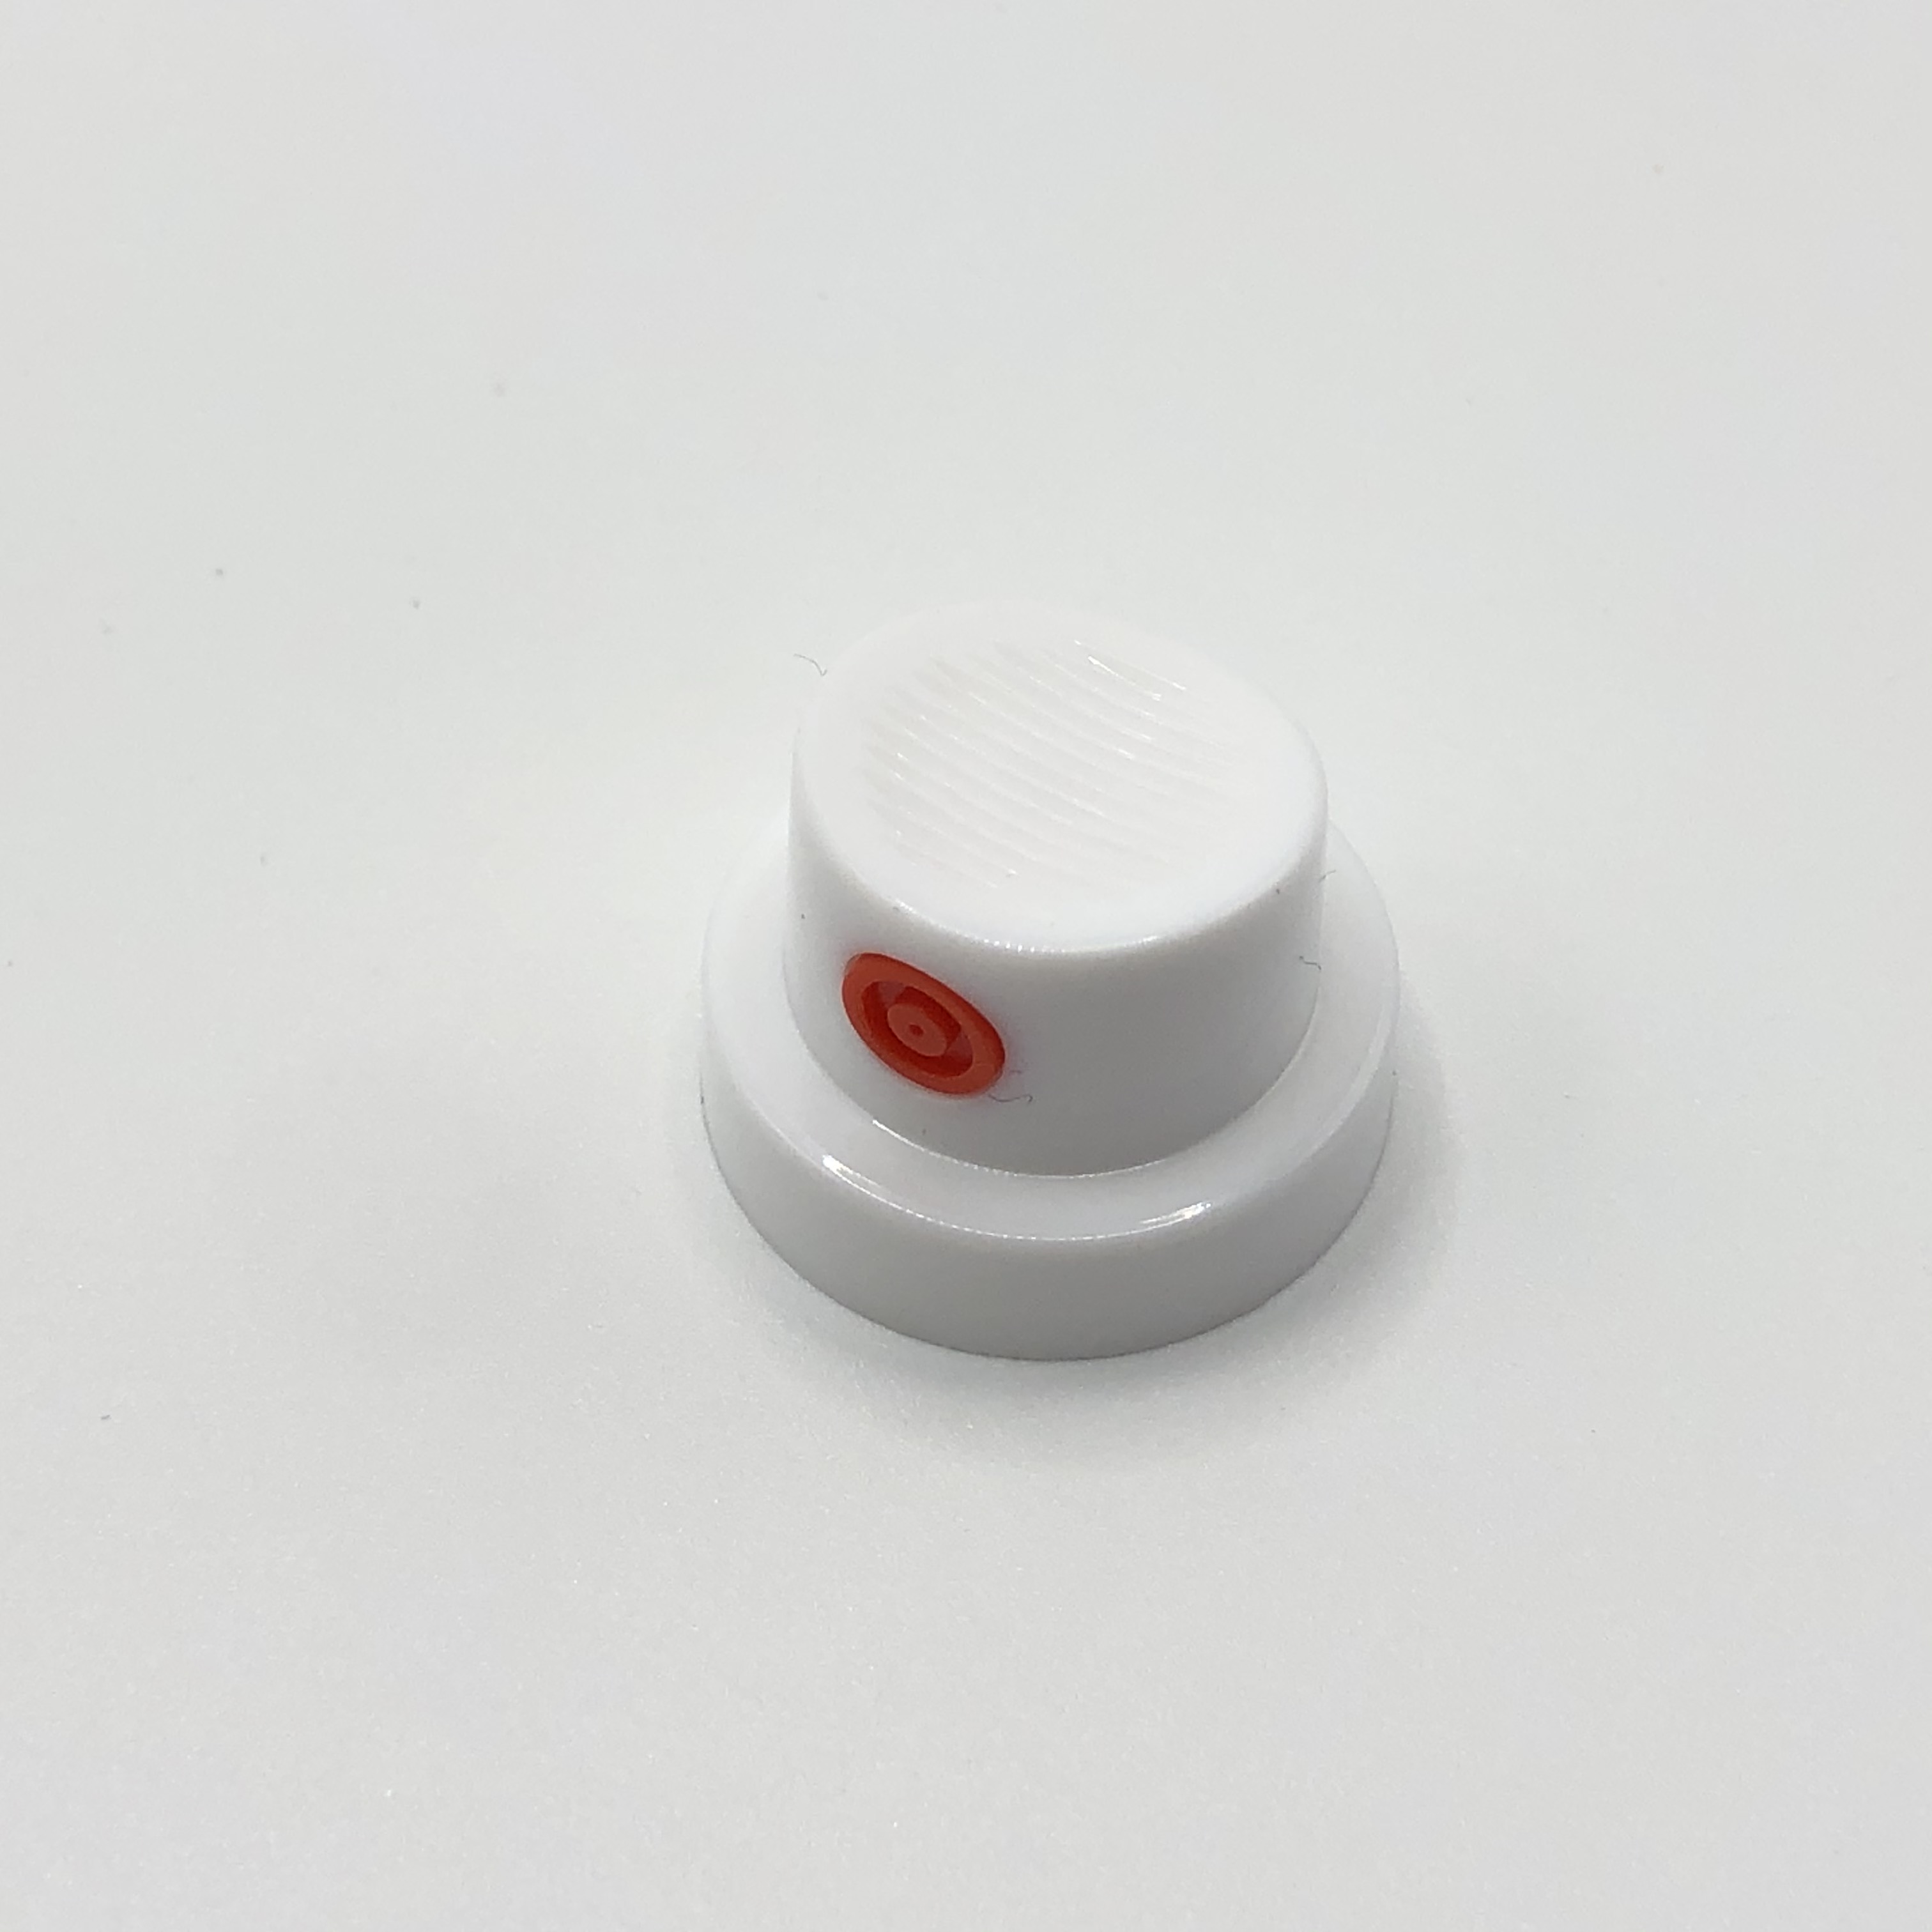 Válvula de pulverização de tinta de pressão ajustável para aplicações versáteis de revestimento